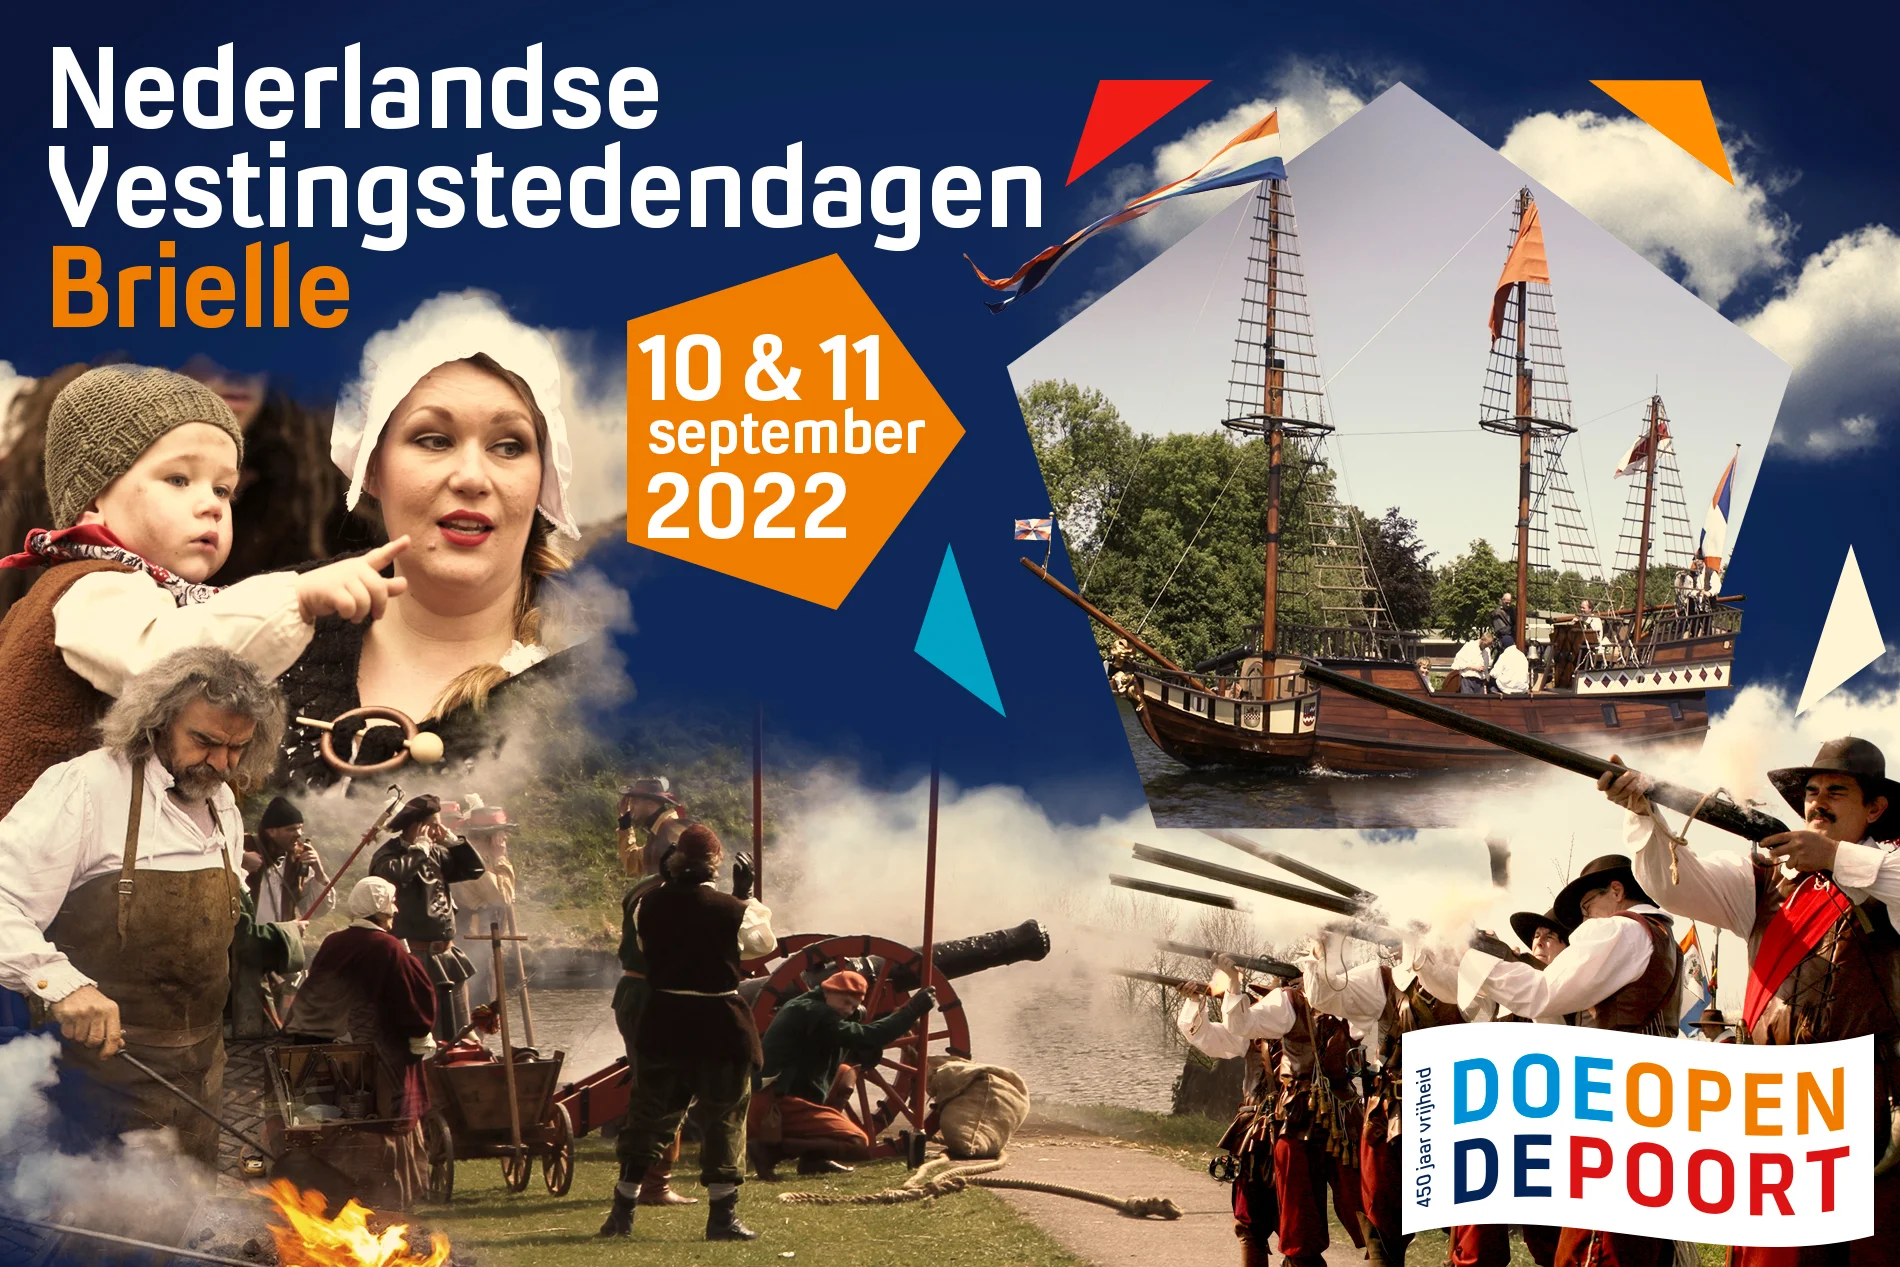 Nederlandse Vestingstedendagen 10 en 11 september in Brielle!